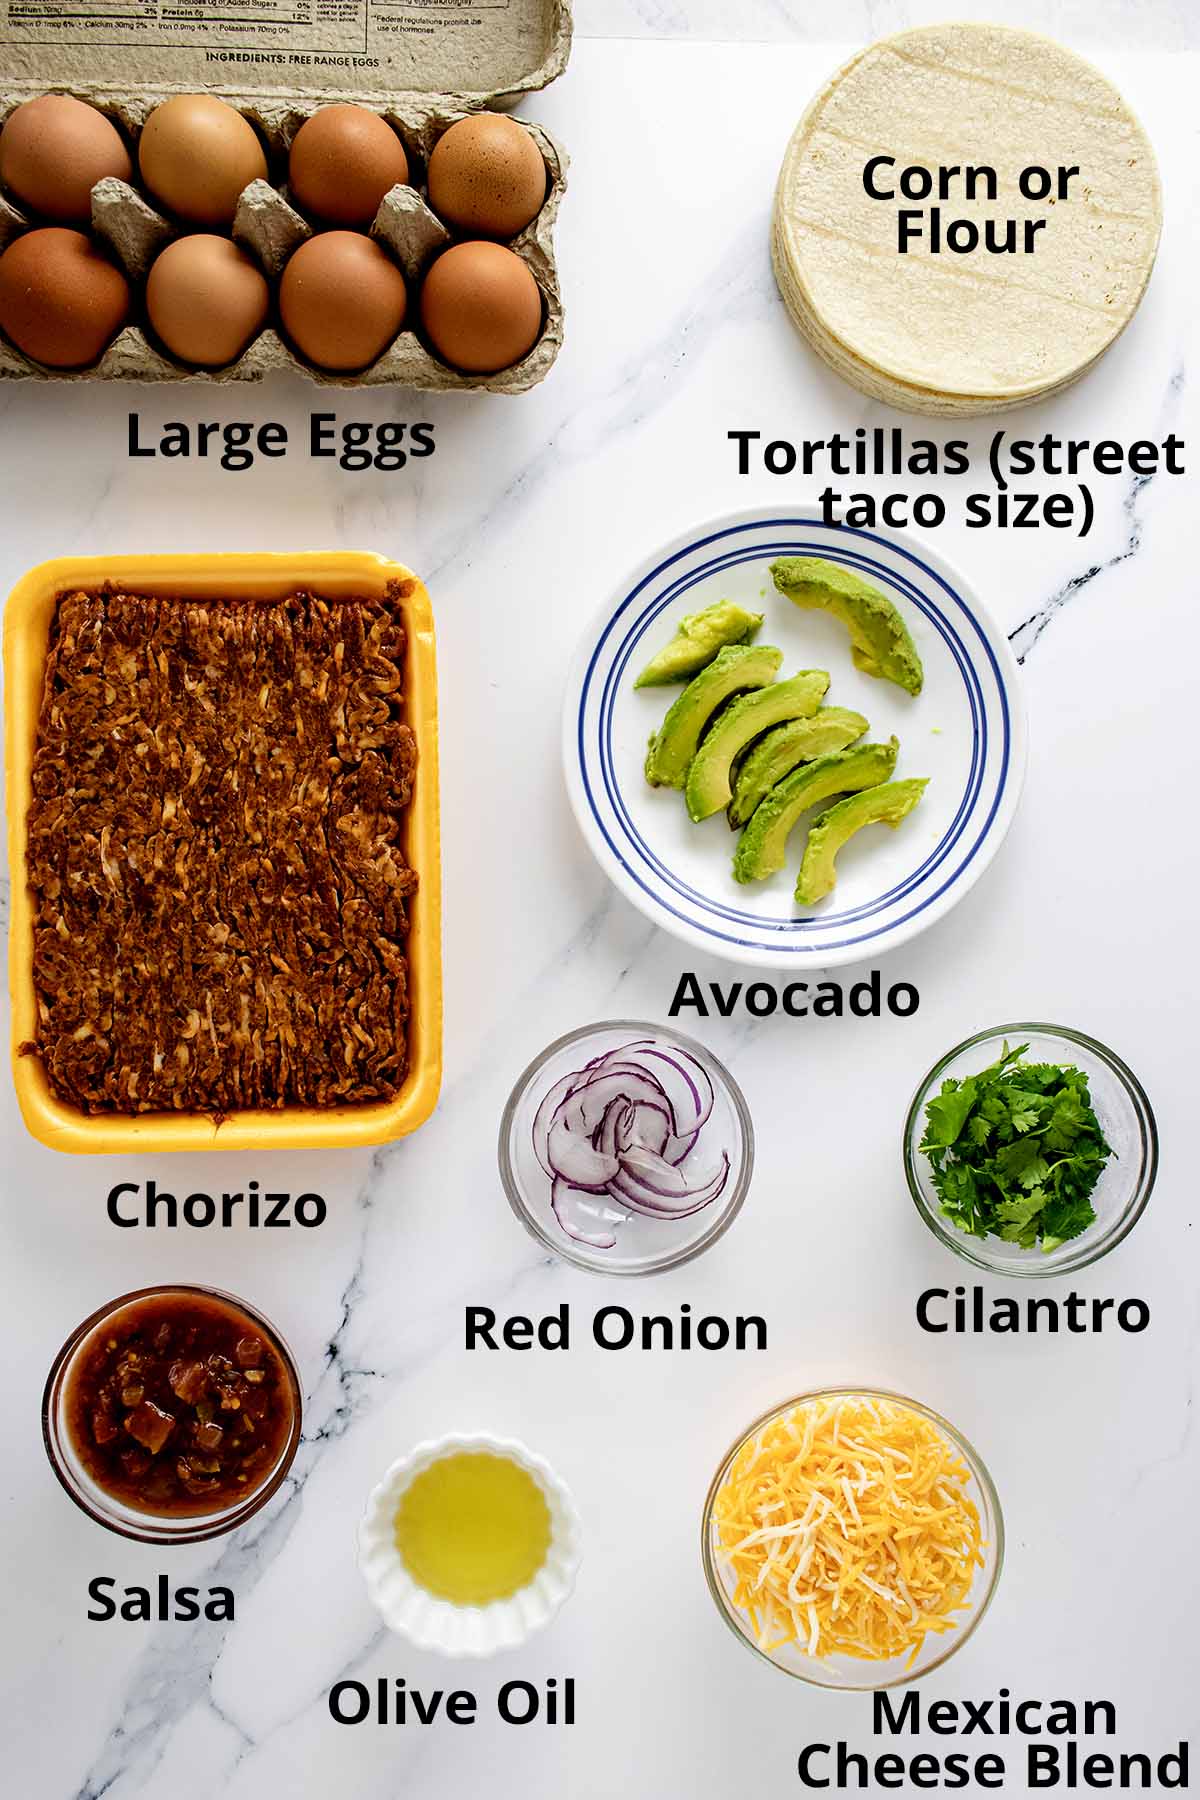 Street taco ingredients